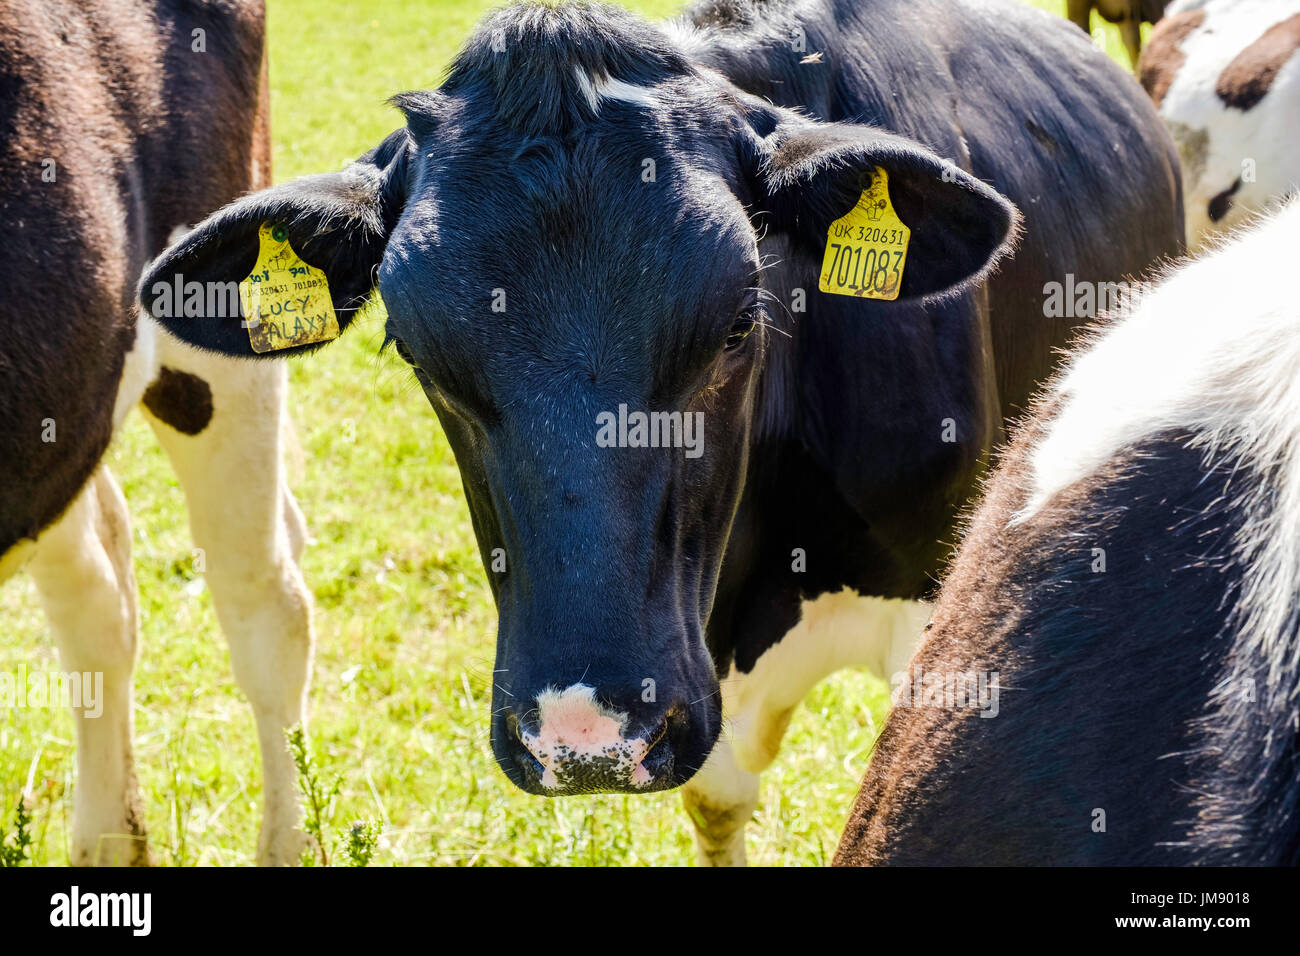 FRIESEN Kuh mit Ohr-TAGS für die Kennzeichnung und Rückverfolgbarkeit. Gloucestershire, England UK Stockfoto